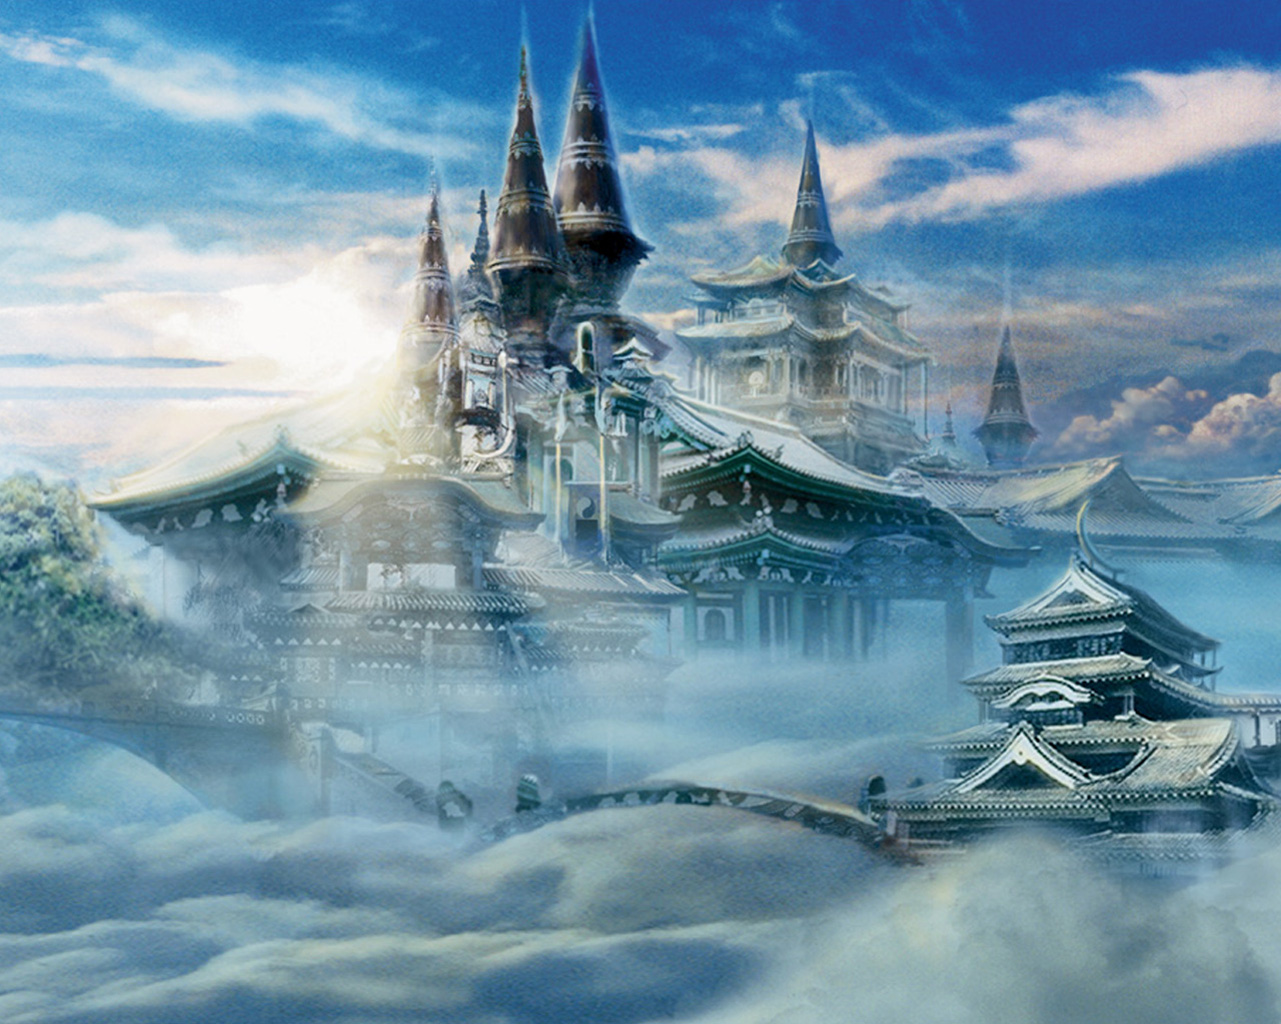 Fantasy City